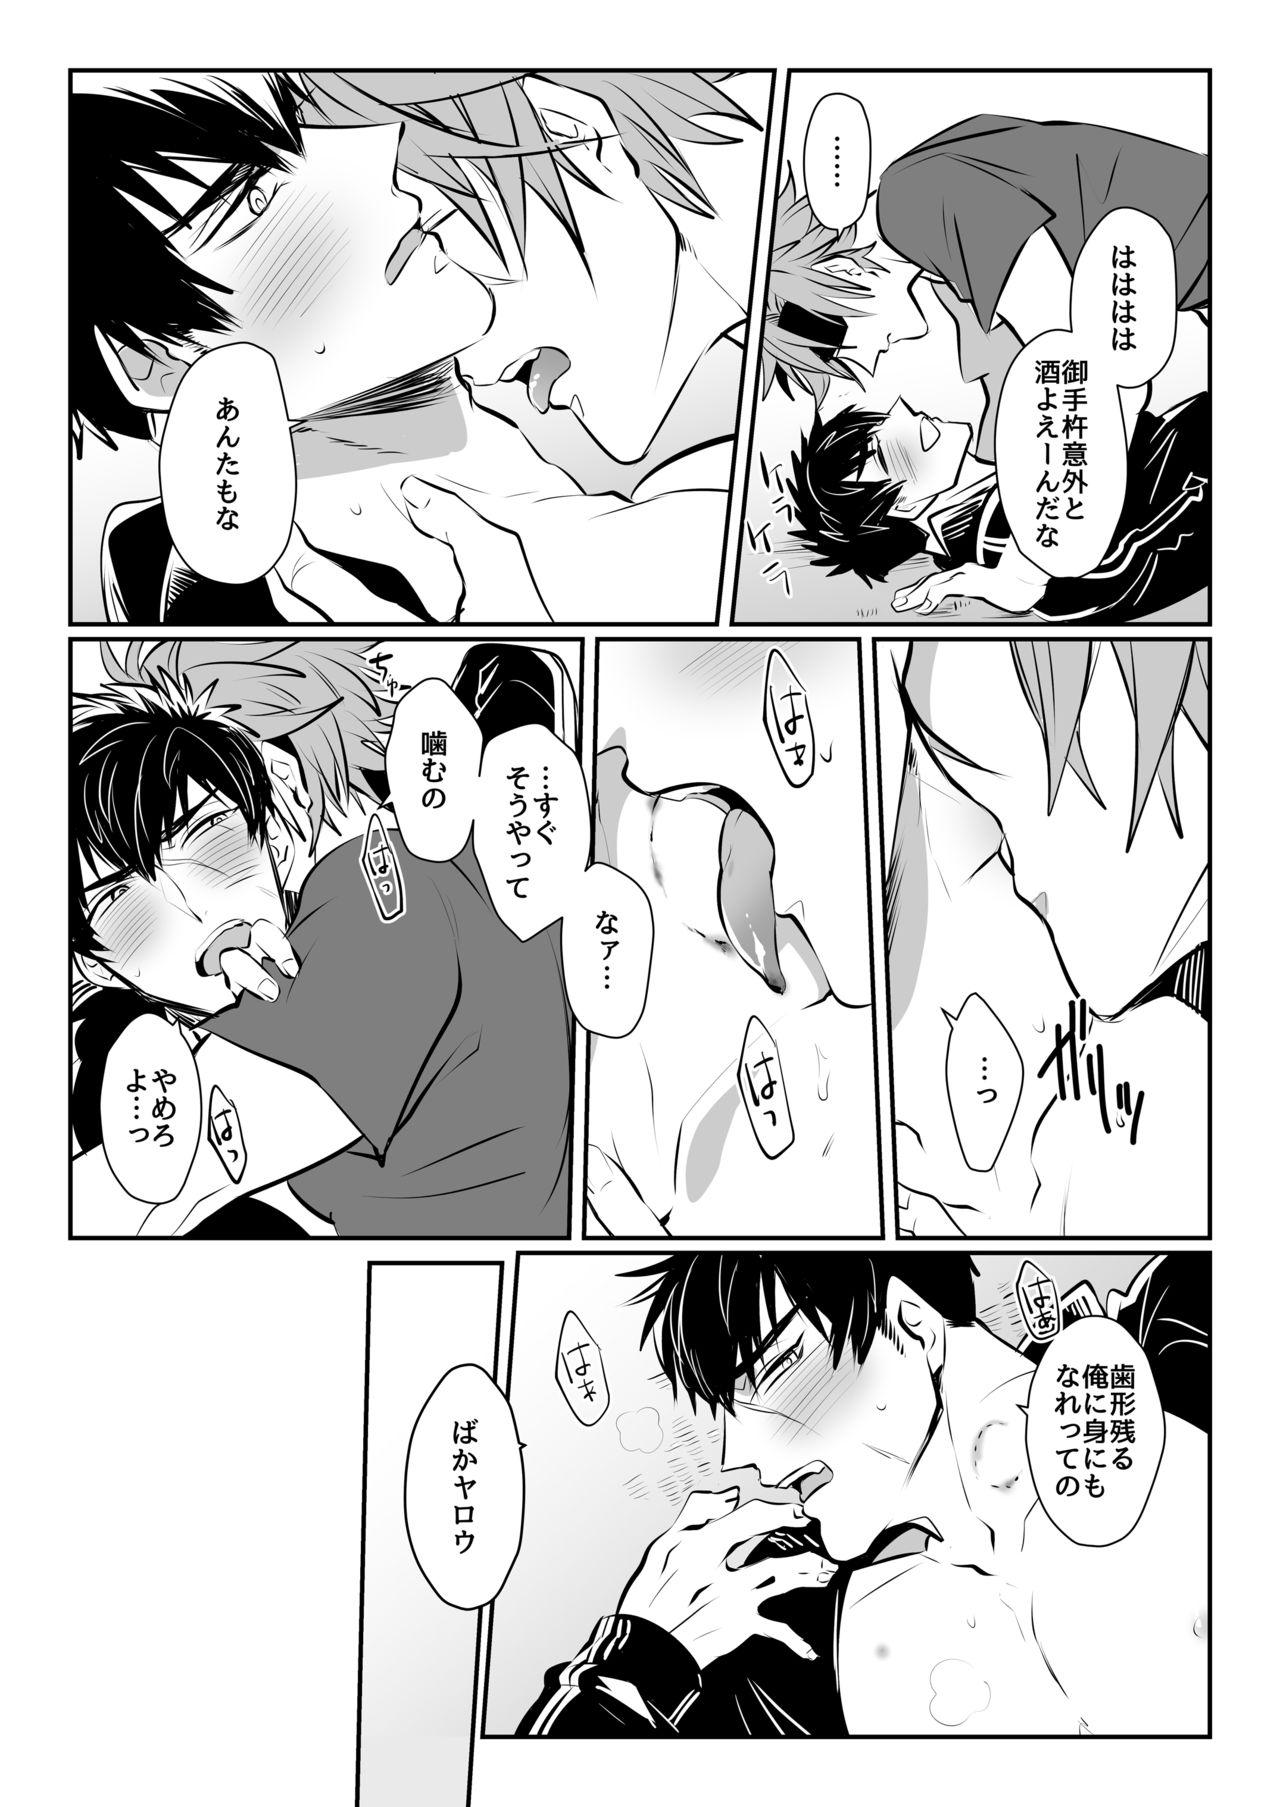 Sex Horoyoi Oyoyoi o Futari-san - Touken ranbu Licking - Page 11